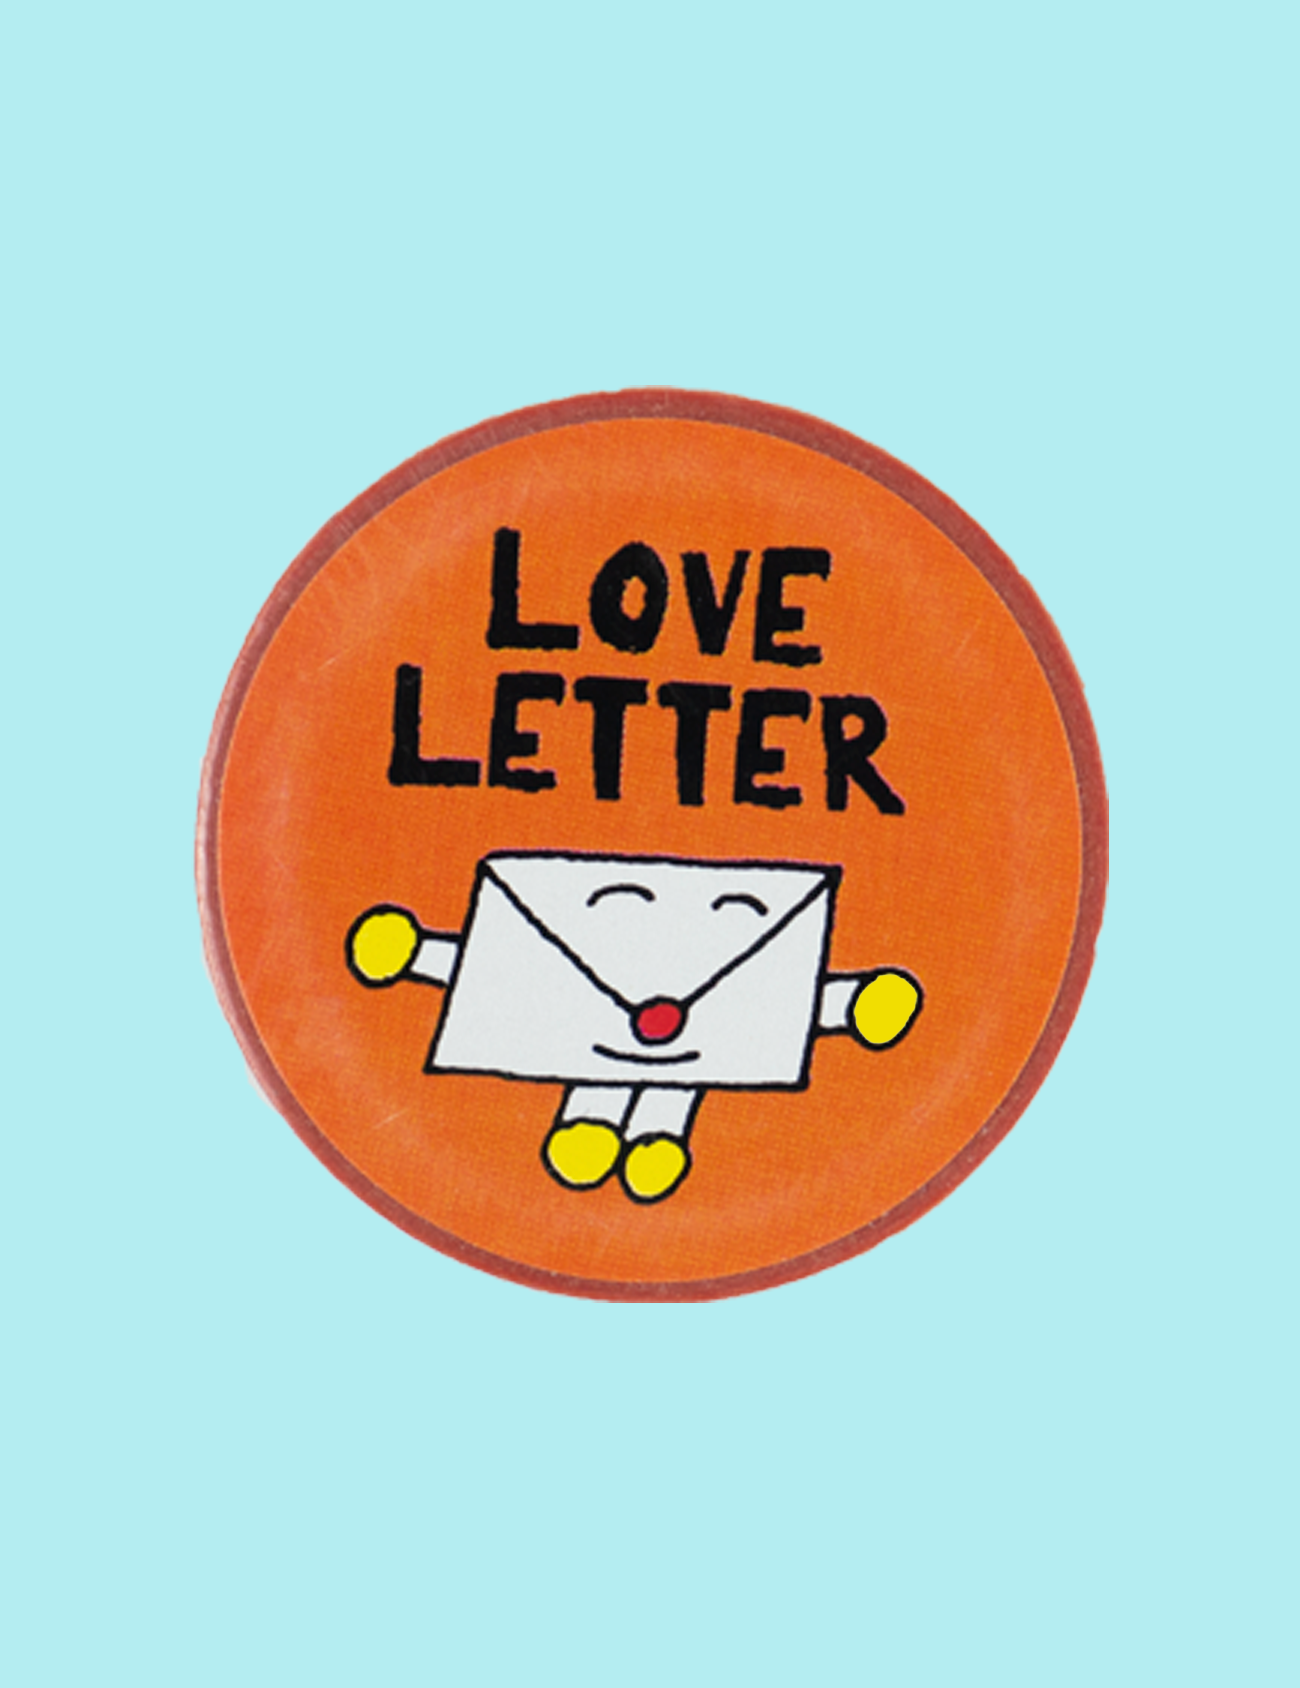 Love letter masking tape